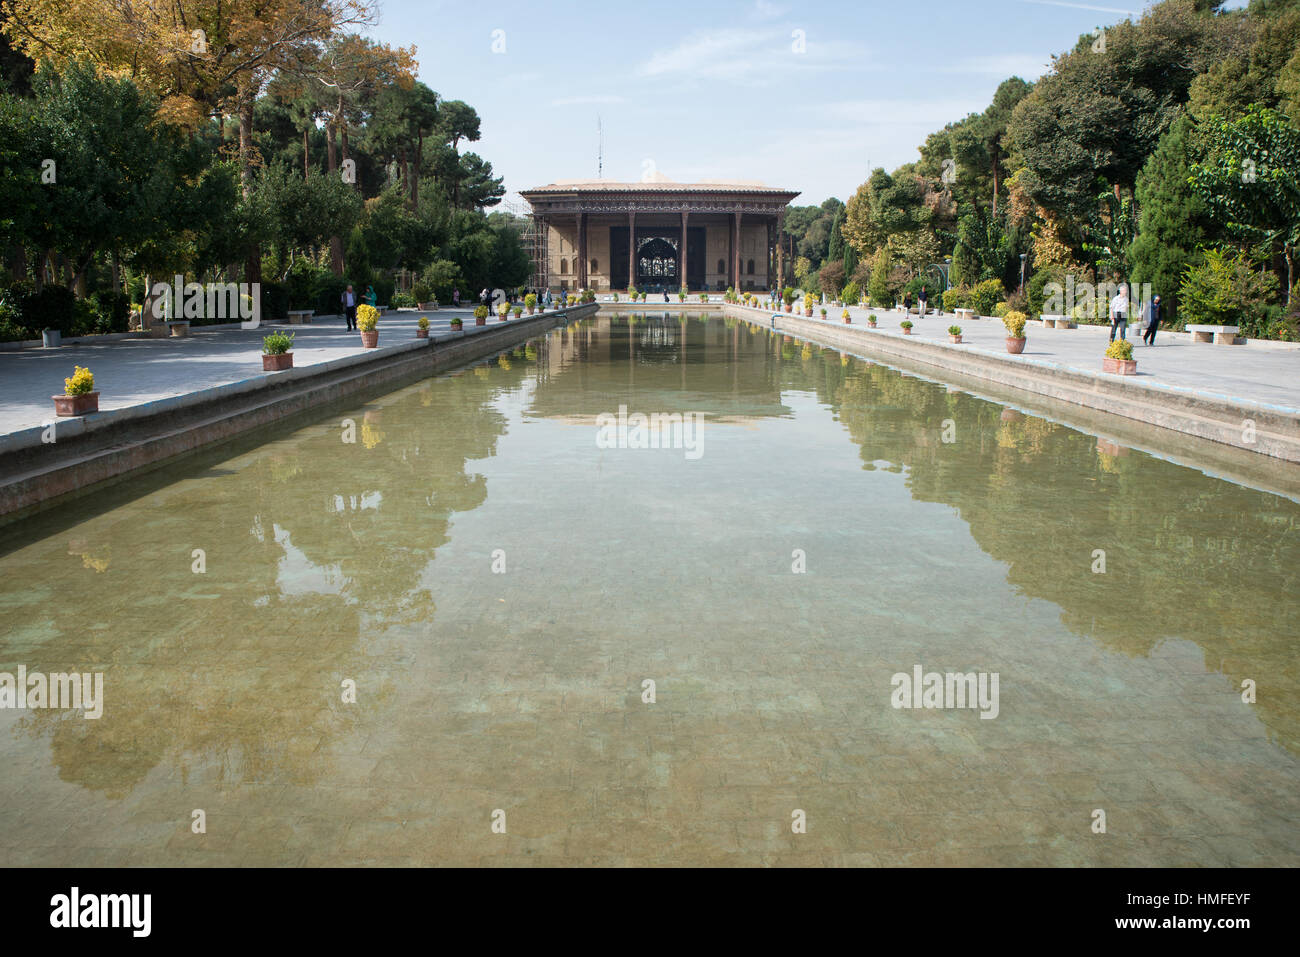 Chehel sotoun palace con colonne che riflette nella piscina di acqua, di Isfahan, Iran Foto Stock